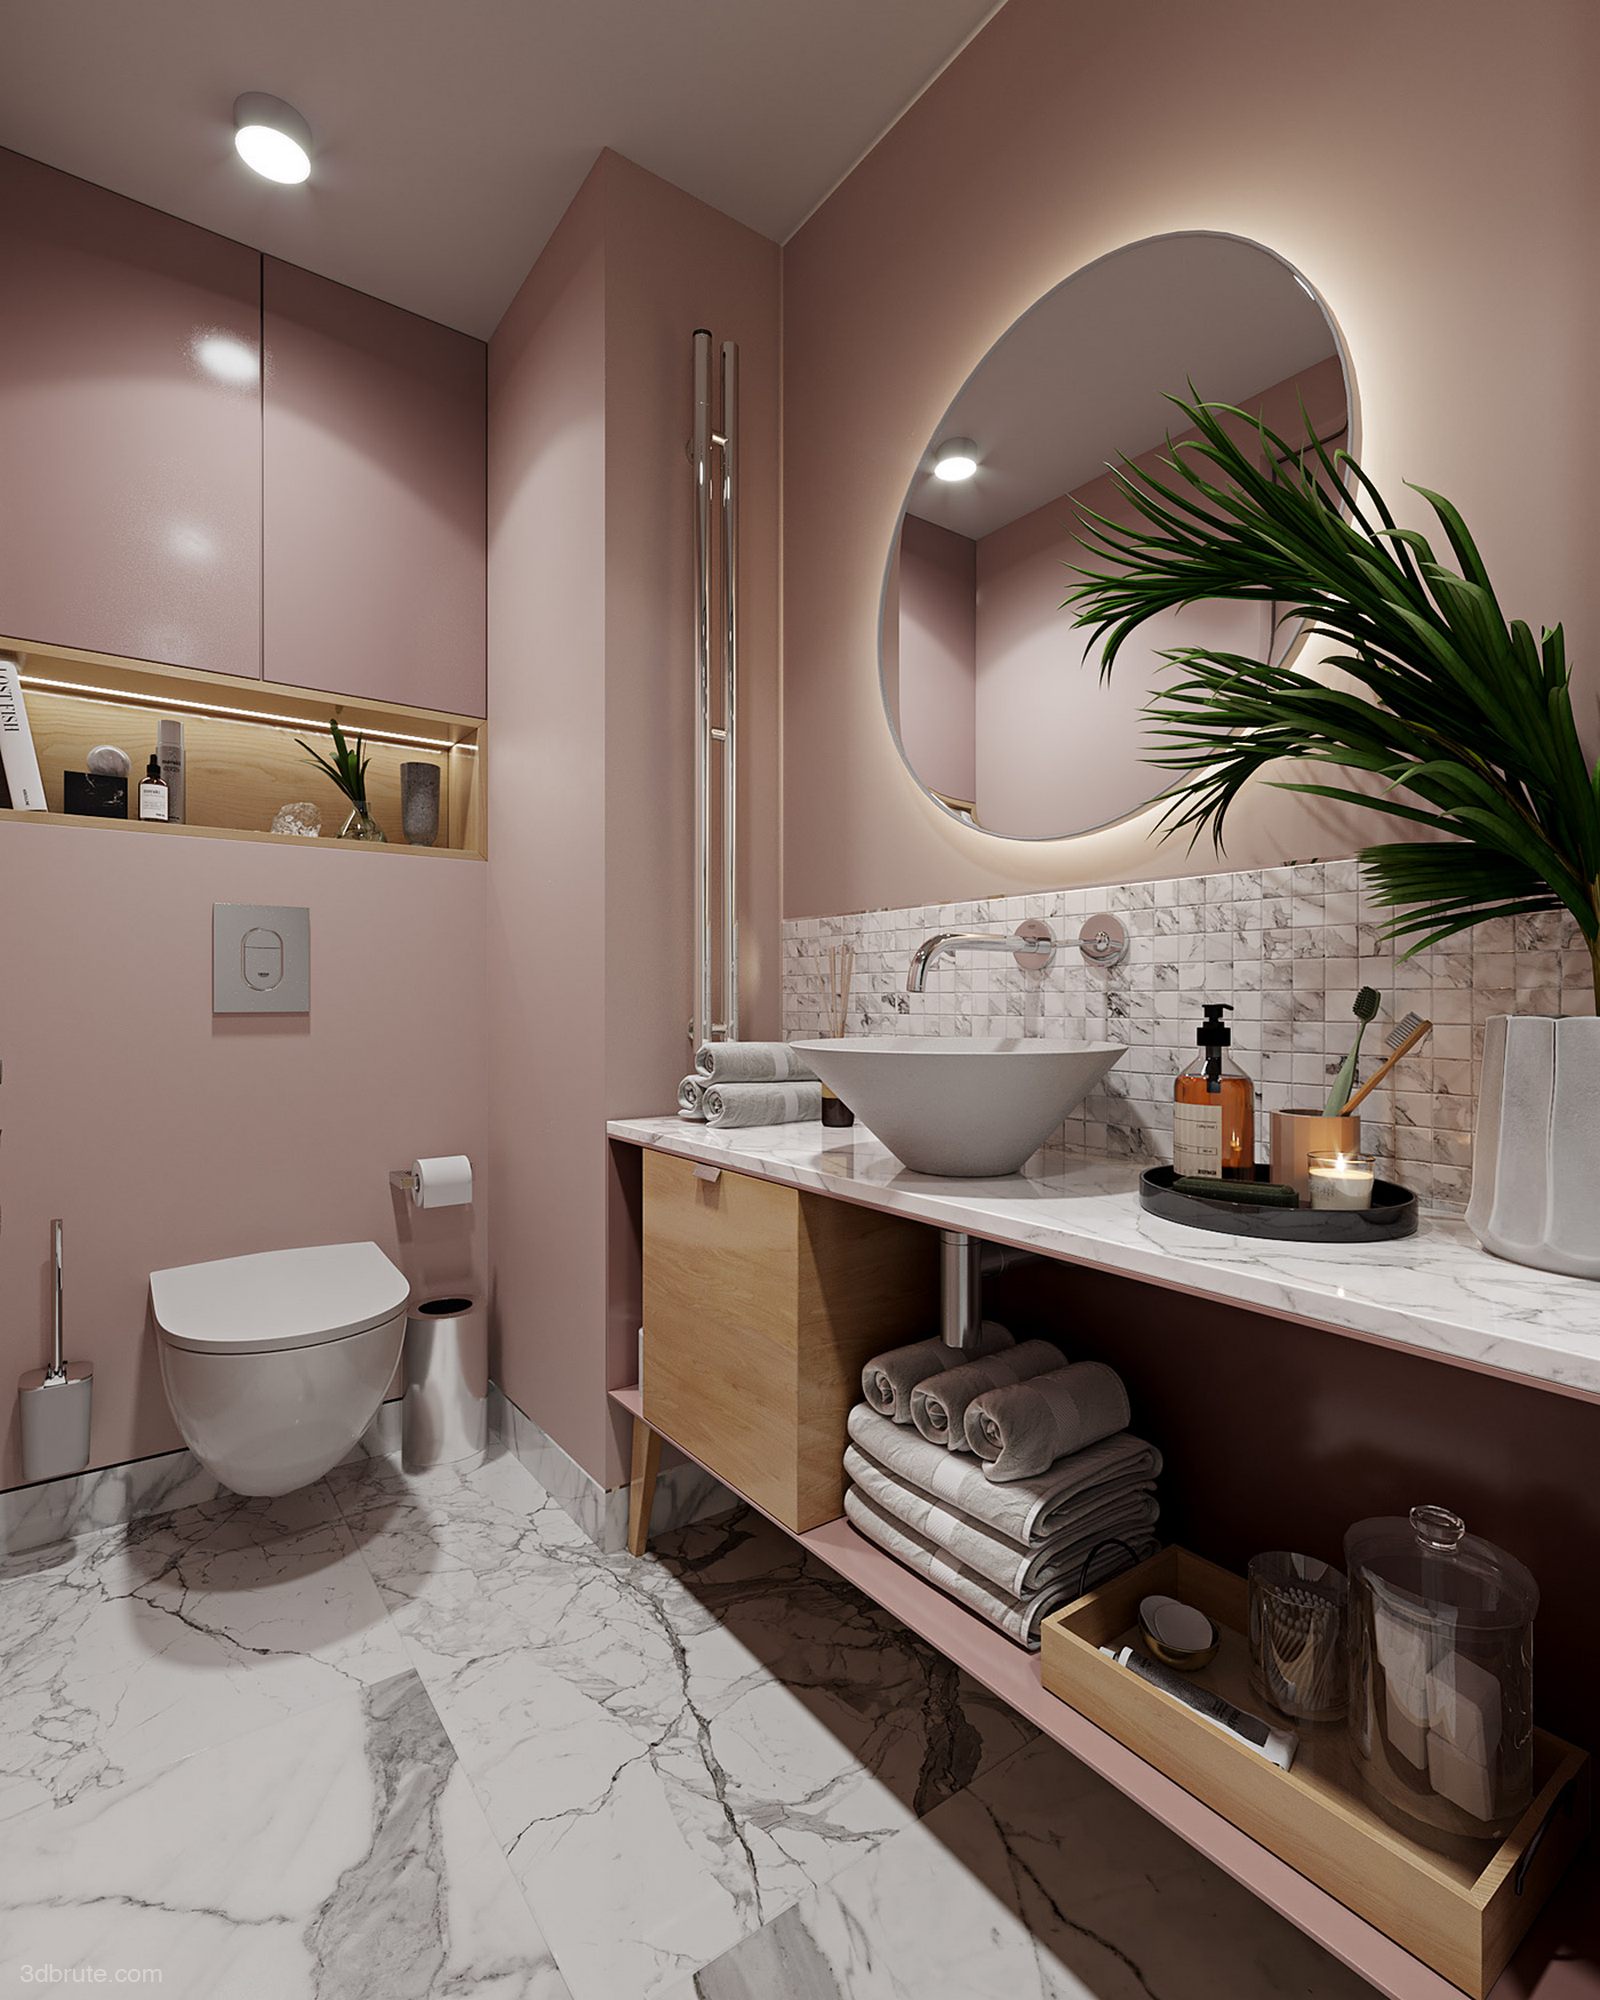 Romantic pink flat-warm home idea 3dbrute